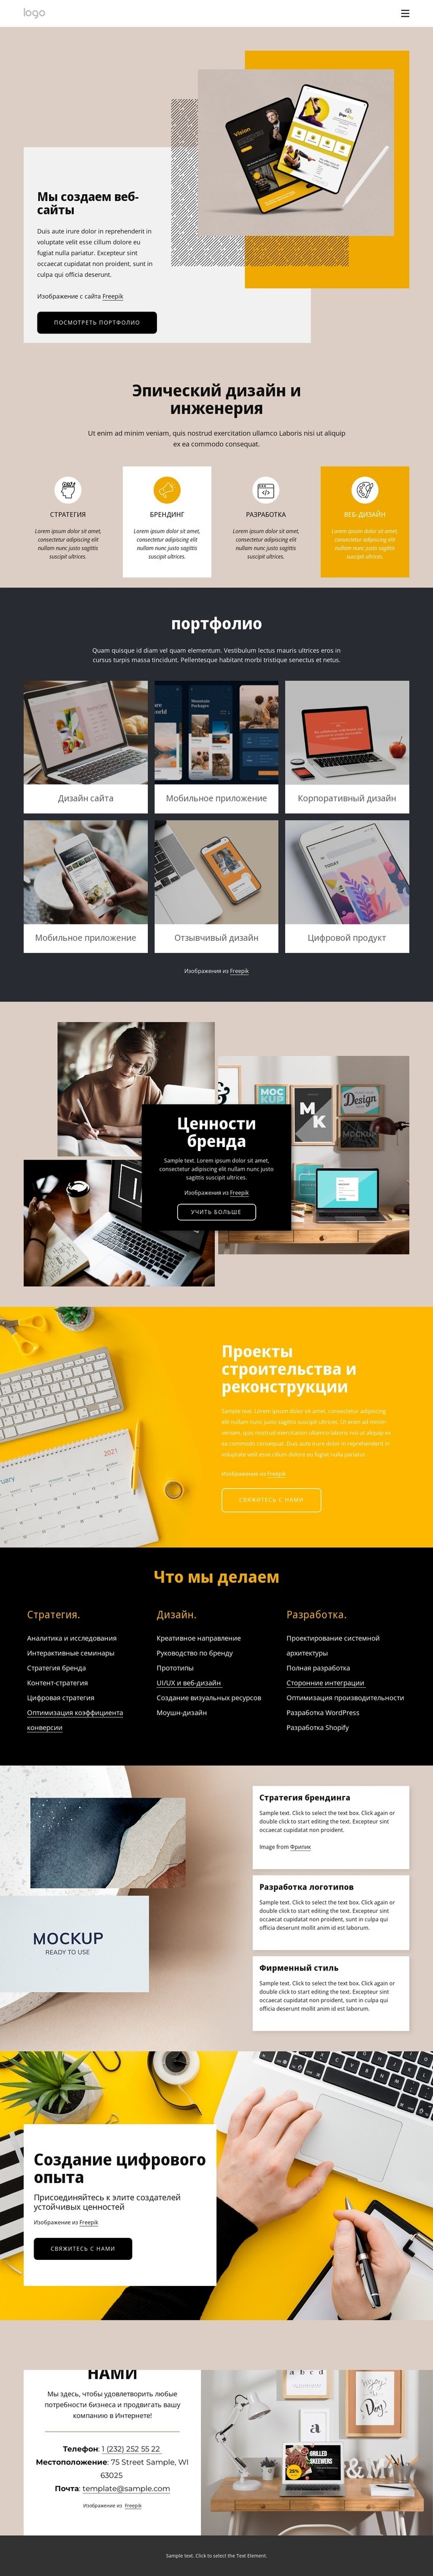 Профессиональный веб-дизайн и дизайн Мокап веб-сайта